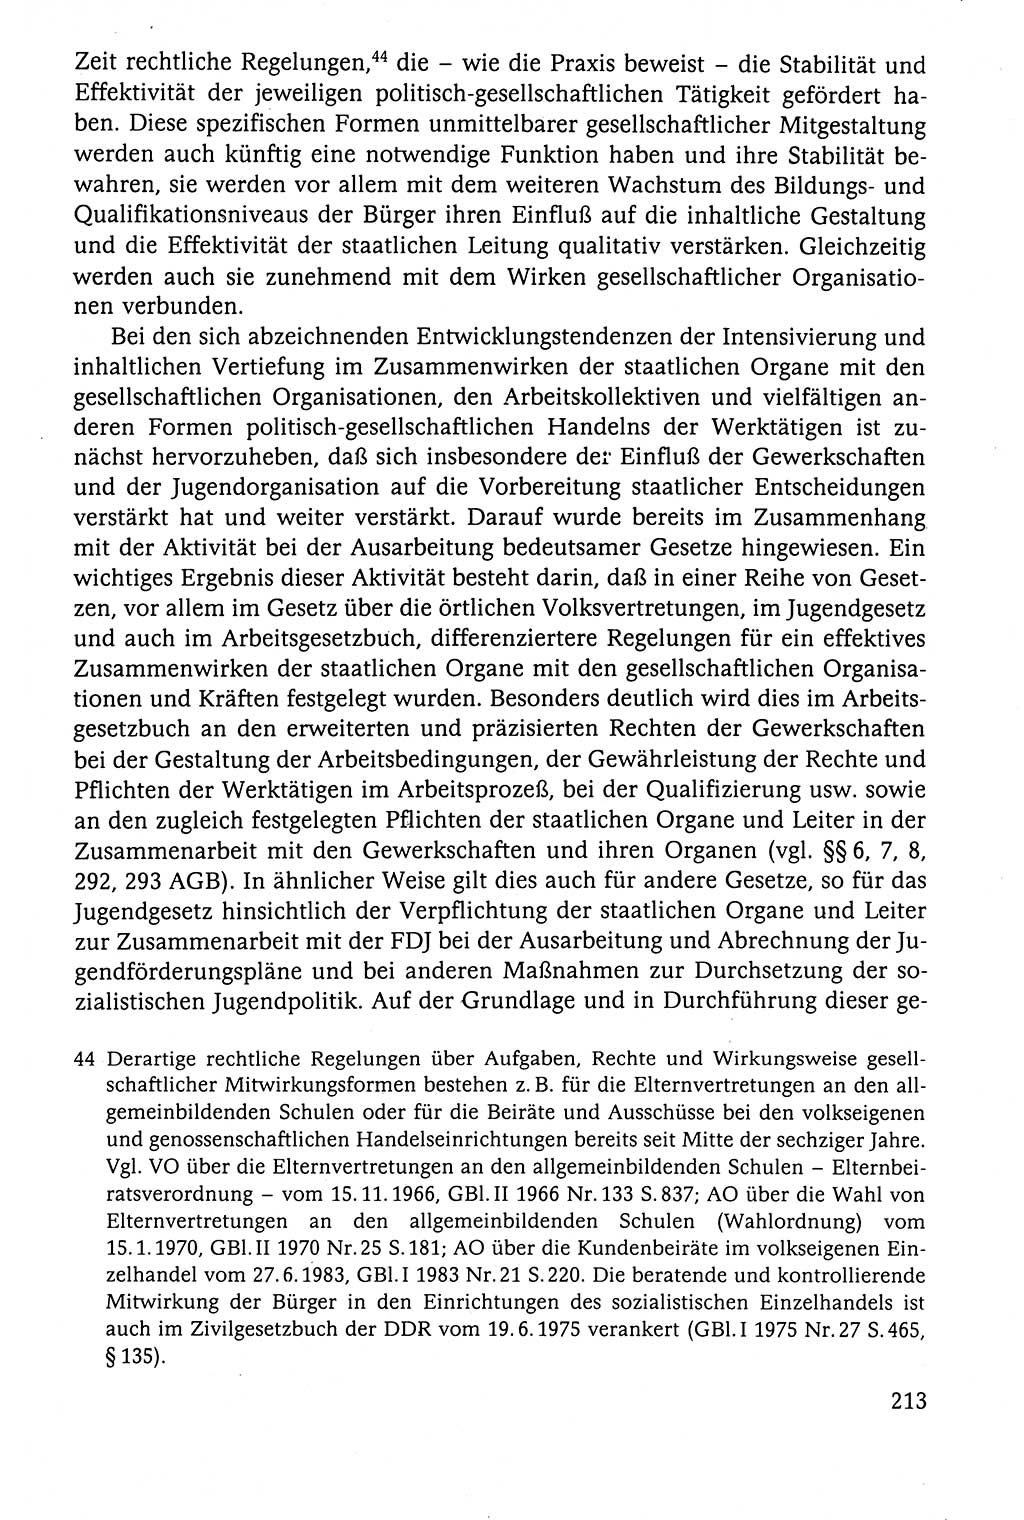 Der Staat im politischen System der DDR (Deutsche Demokratische Republik) 1986, Seite 213 (St. pol. Sys. DDR 1986, S. 213)